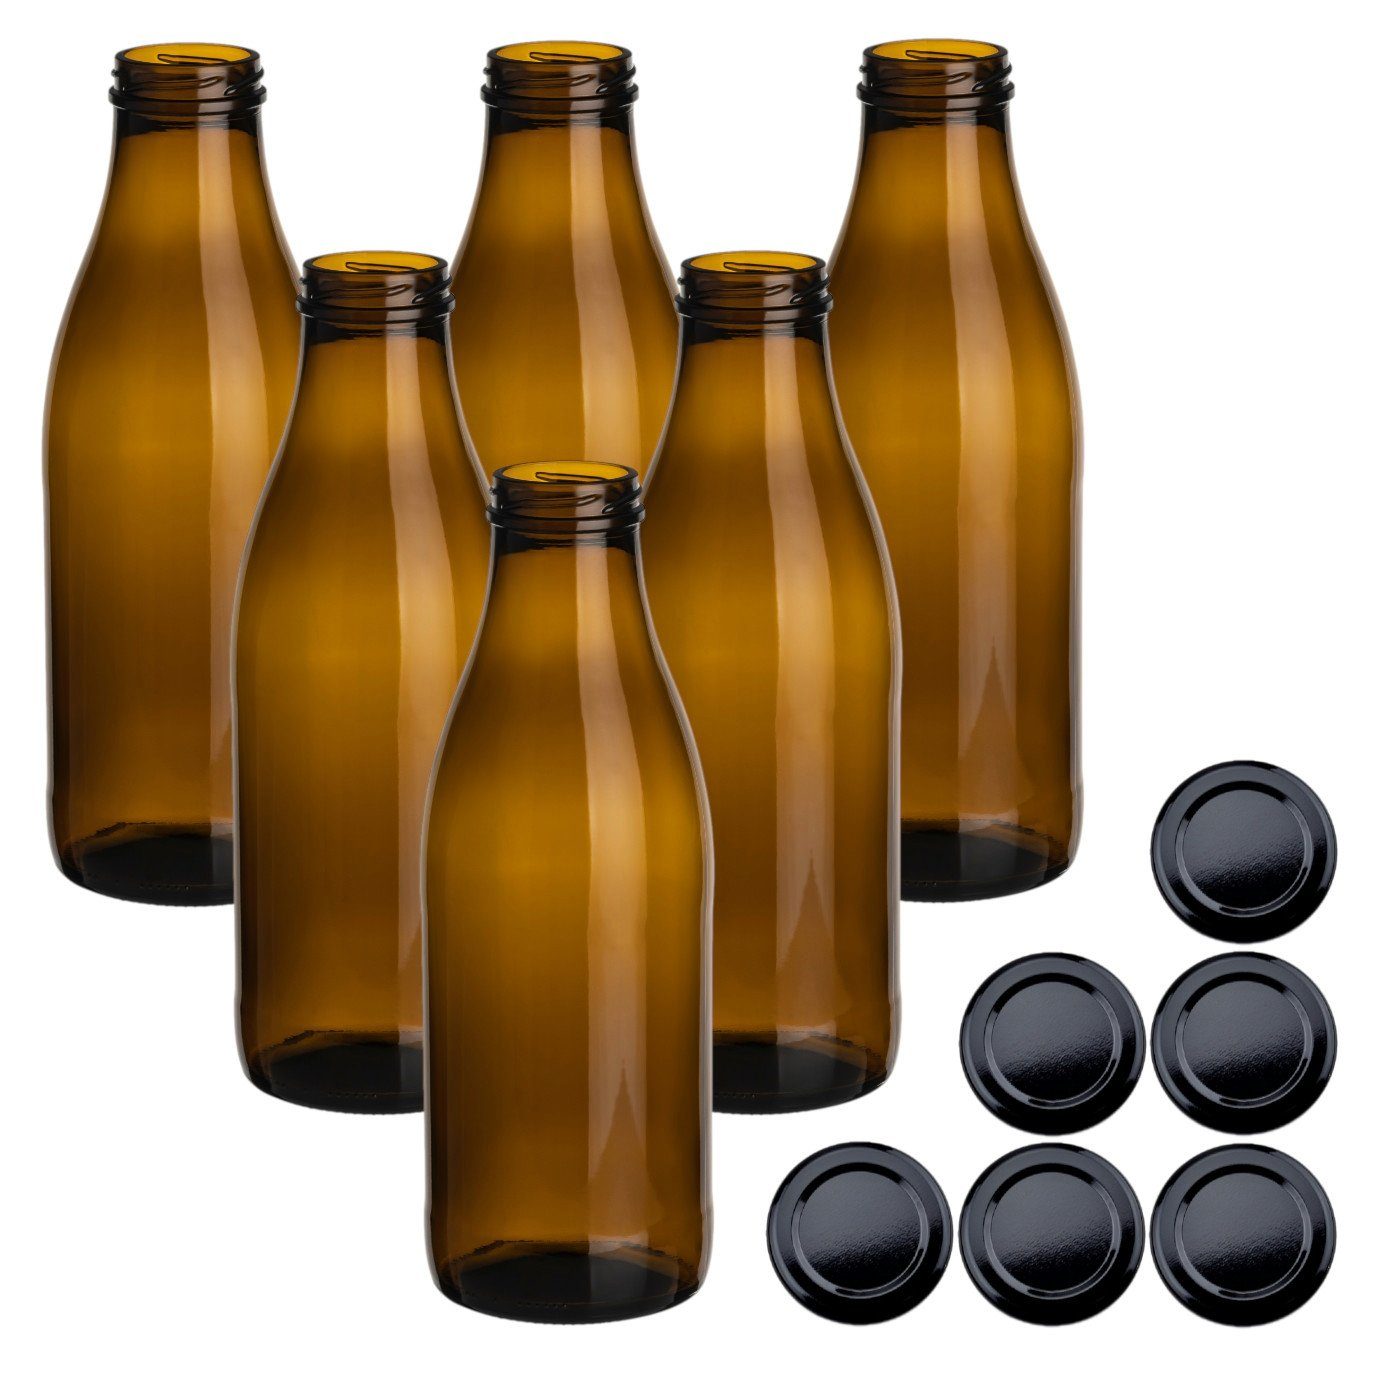 gouveo Trinkflasche Saftflaschen 1000 ml mit Schraub-Deckel - Große Flasche 1,0 l aus Glas, 6er Set, braun/schwarz